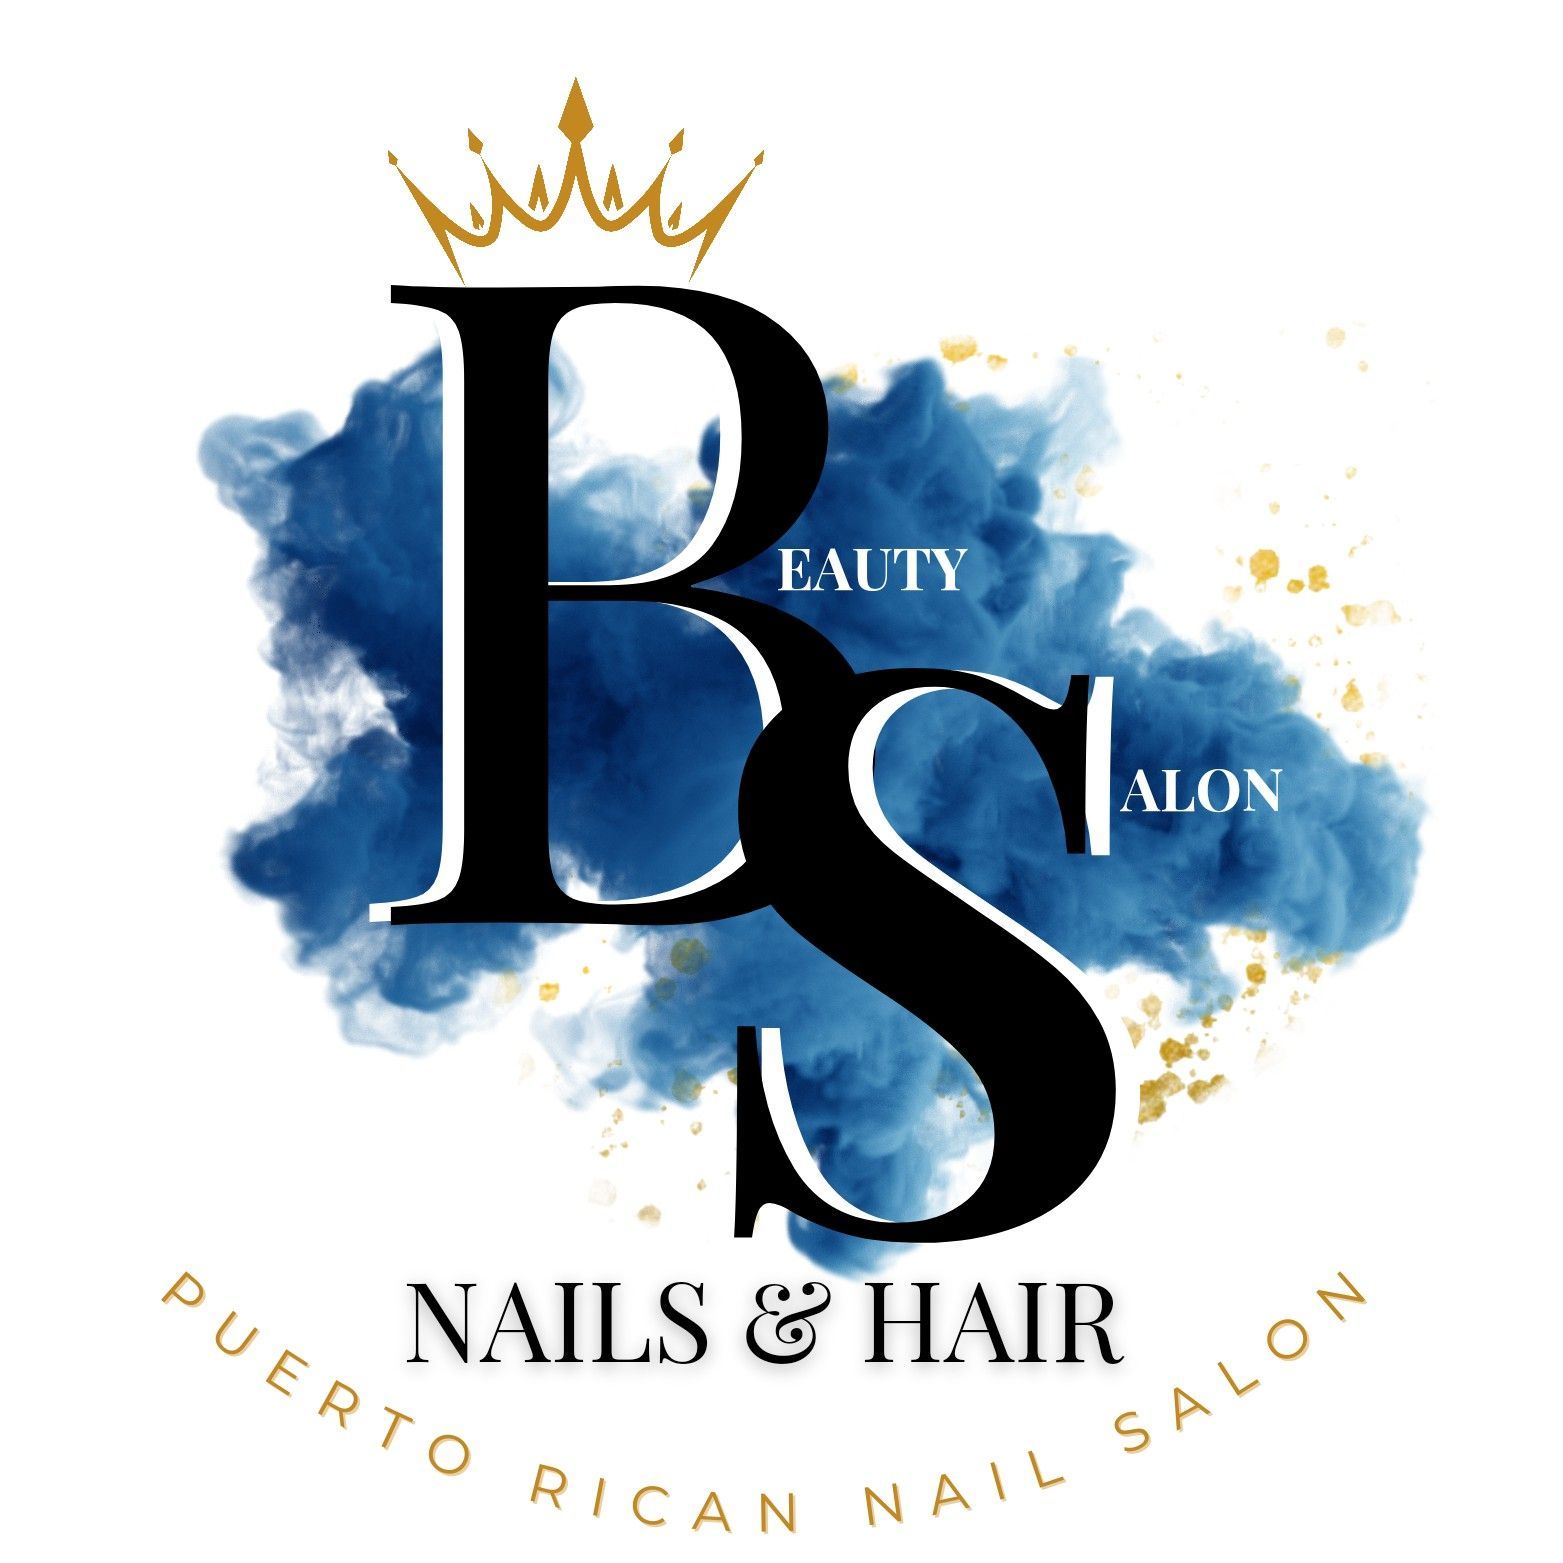 Puerto Rican Nails Salon, 665 S. Lakeshore Way, Lake Alfred, 33850